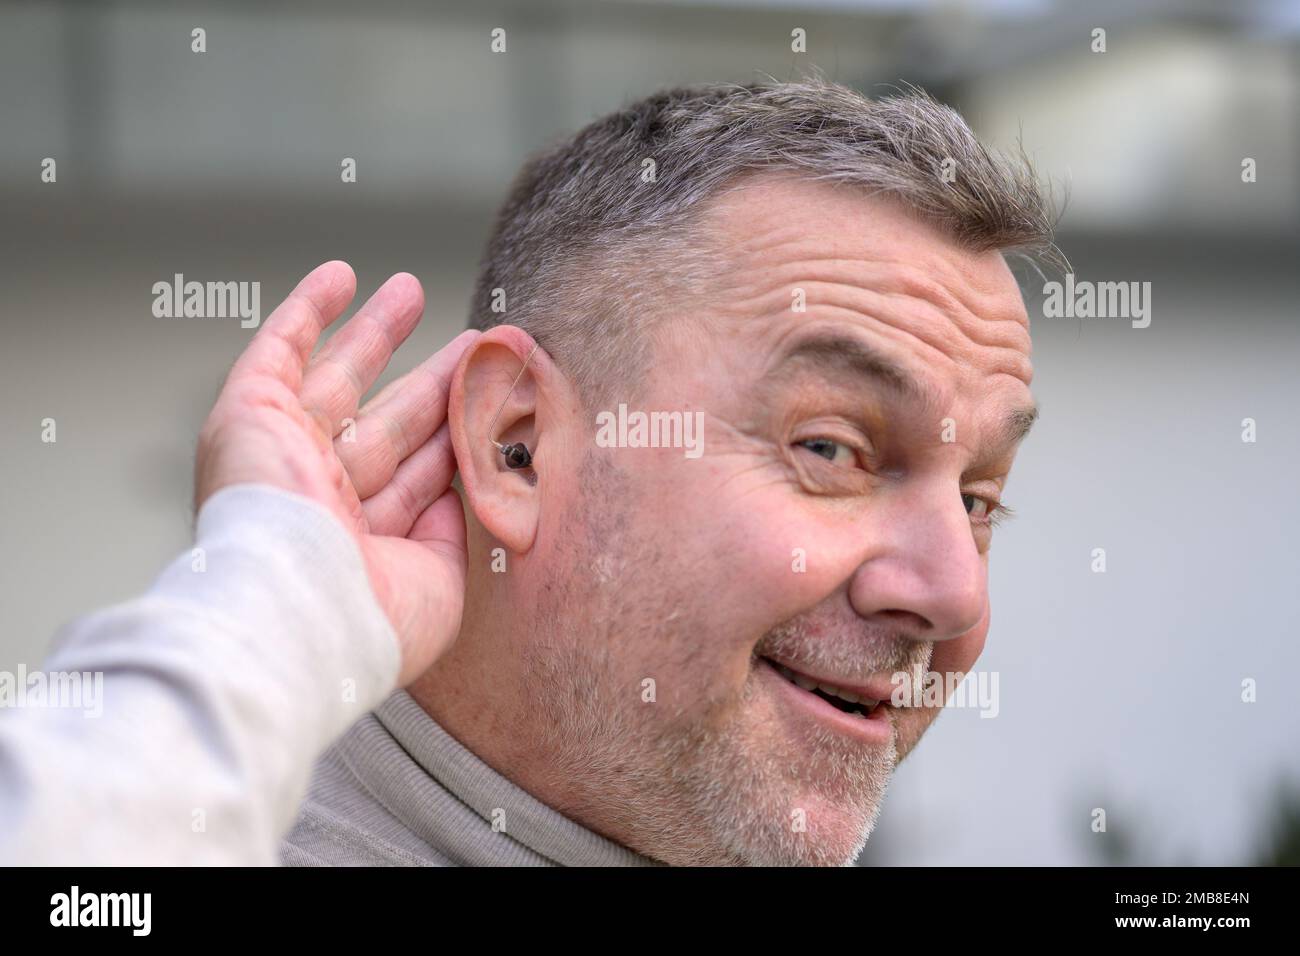 Ein Mann mit grauhaarigen Schwerhörigen im mittleren Alter zwischen 50 und 60 Jahren hält seine Hand hinter dem Ohr, in dem er ein Hörgerät hat Stockfoto